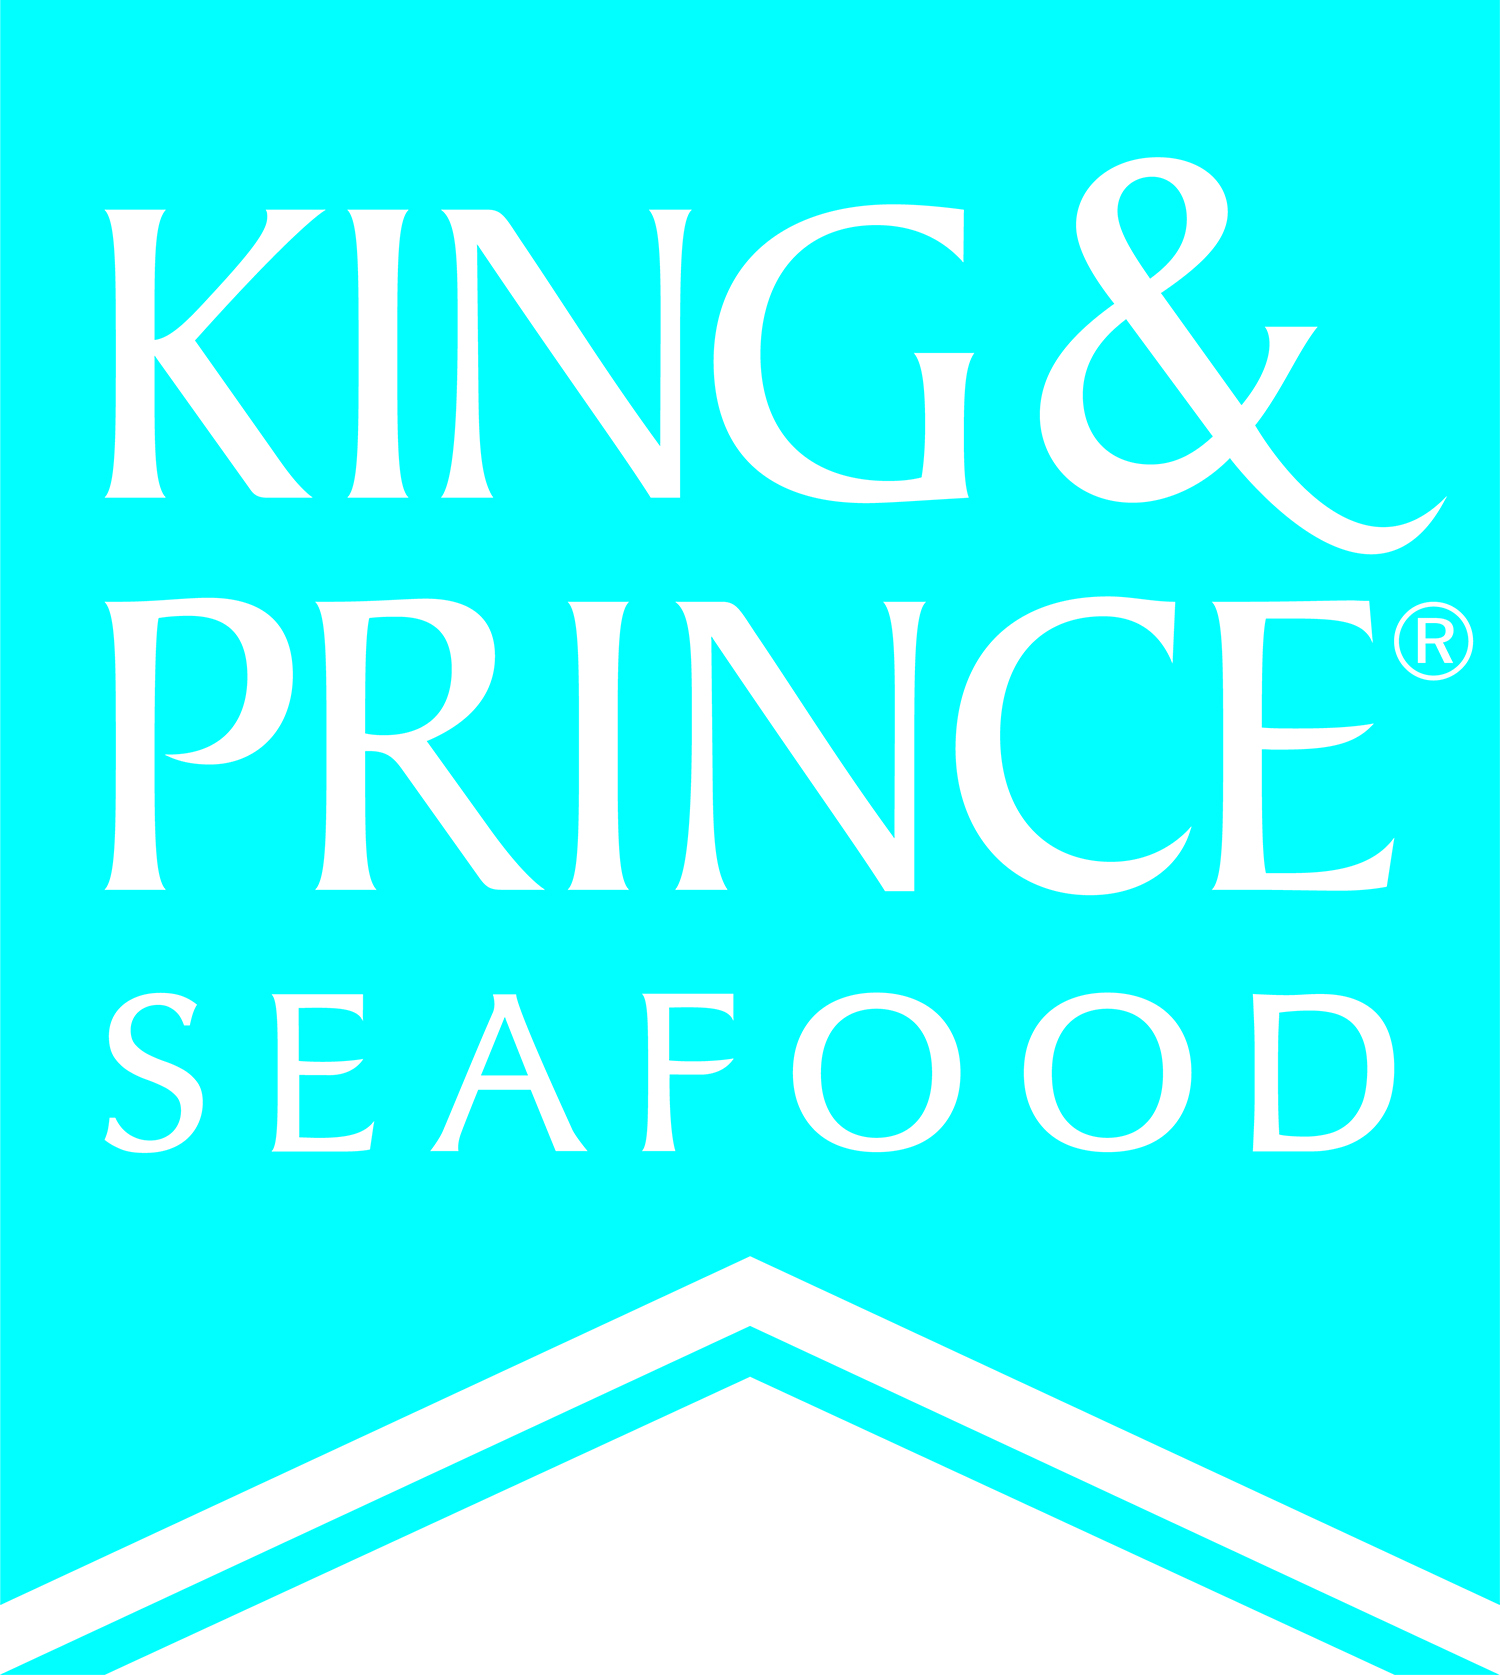 King and Prince Seafood Brunswick Georgia